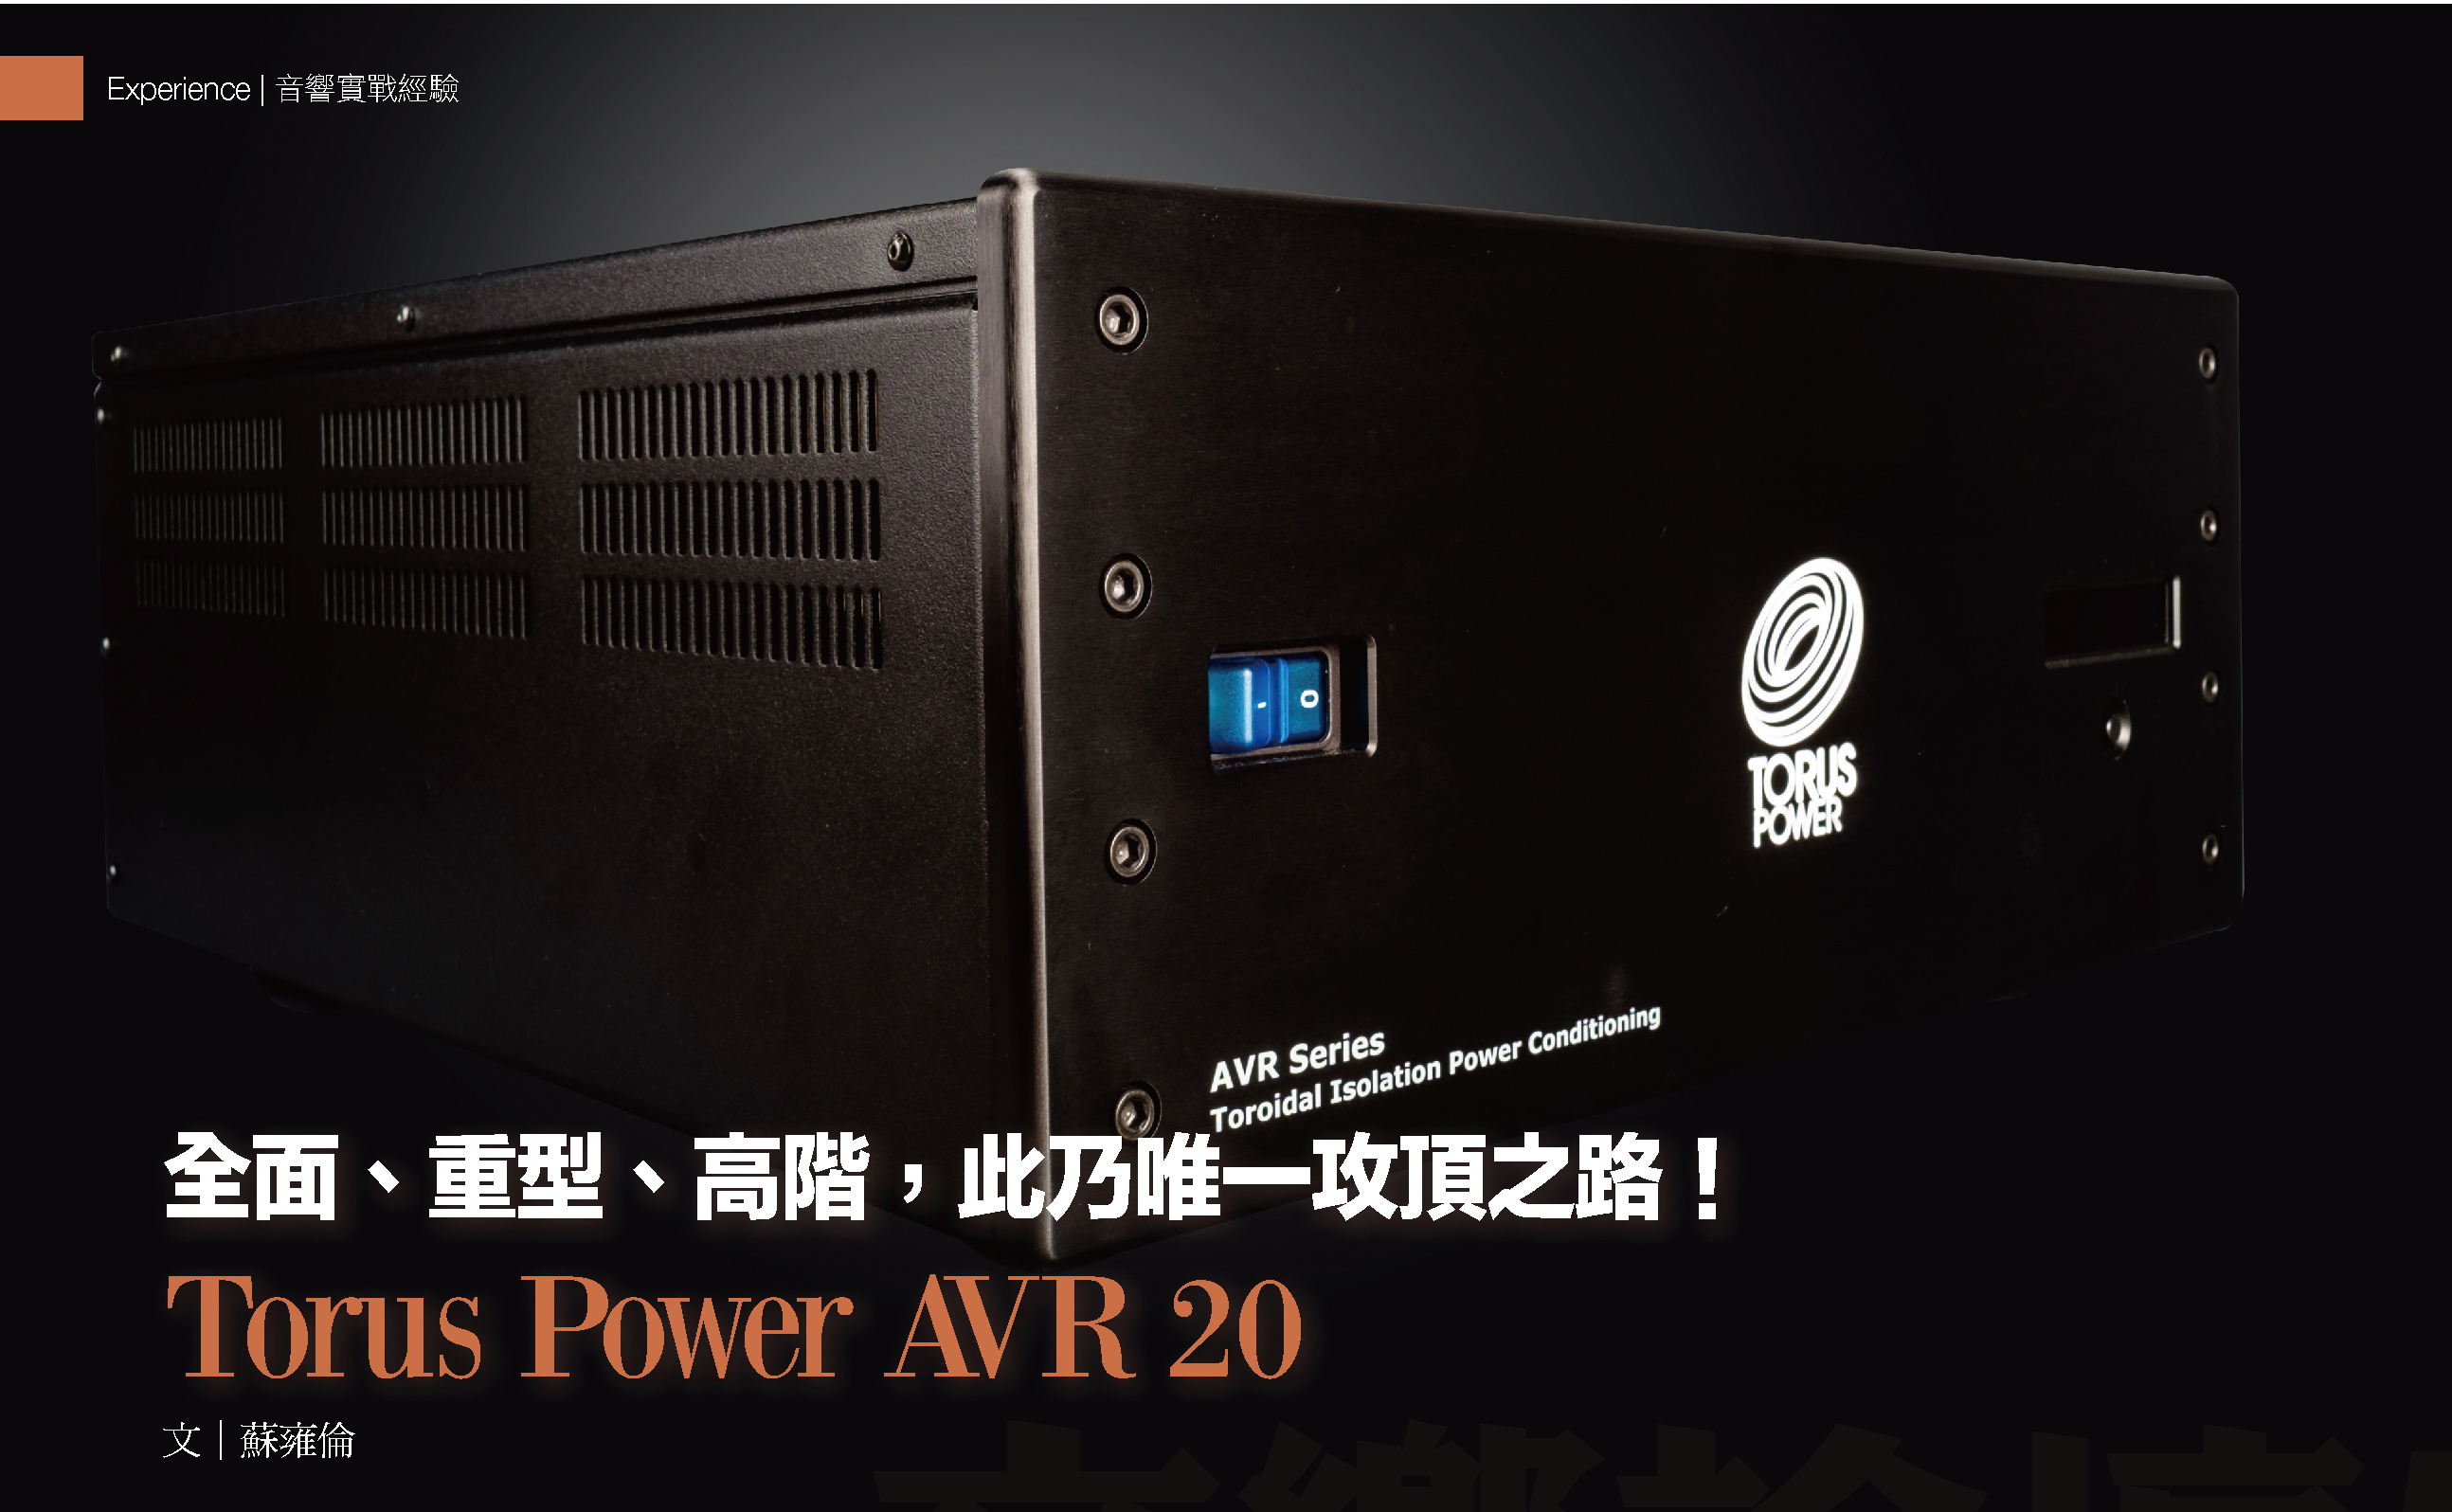  Torus Power AVR 20 頂級環形隔離電源處理器